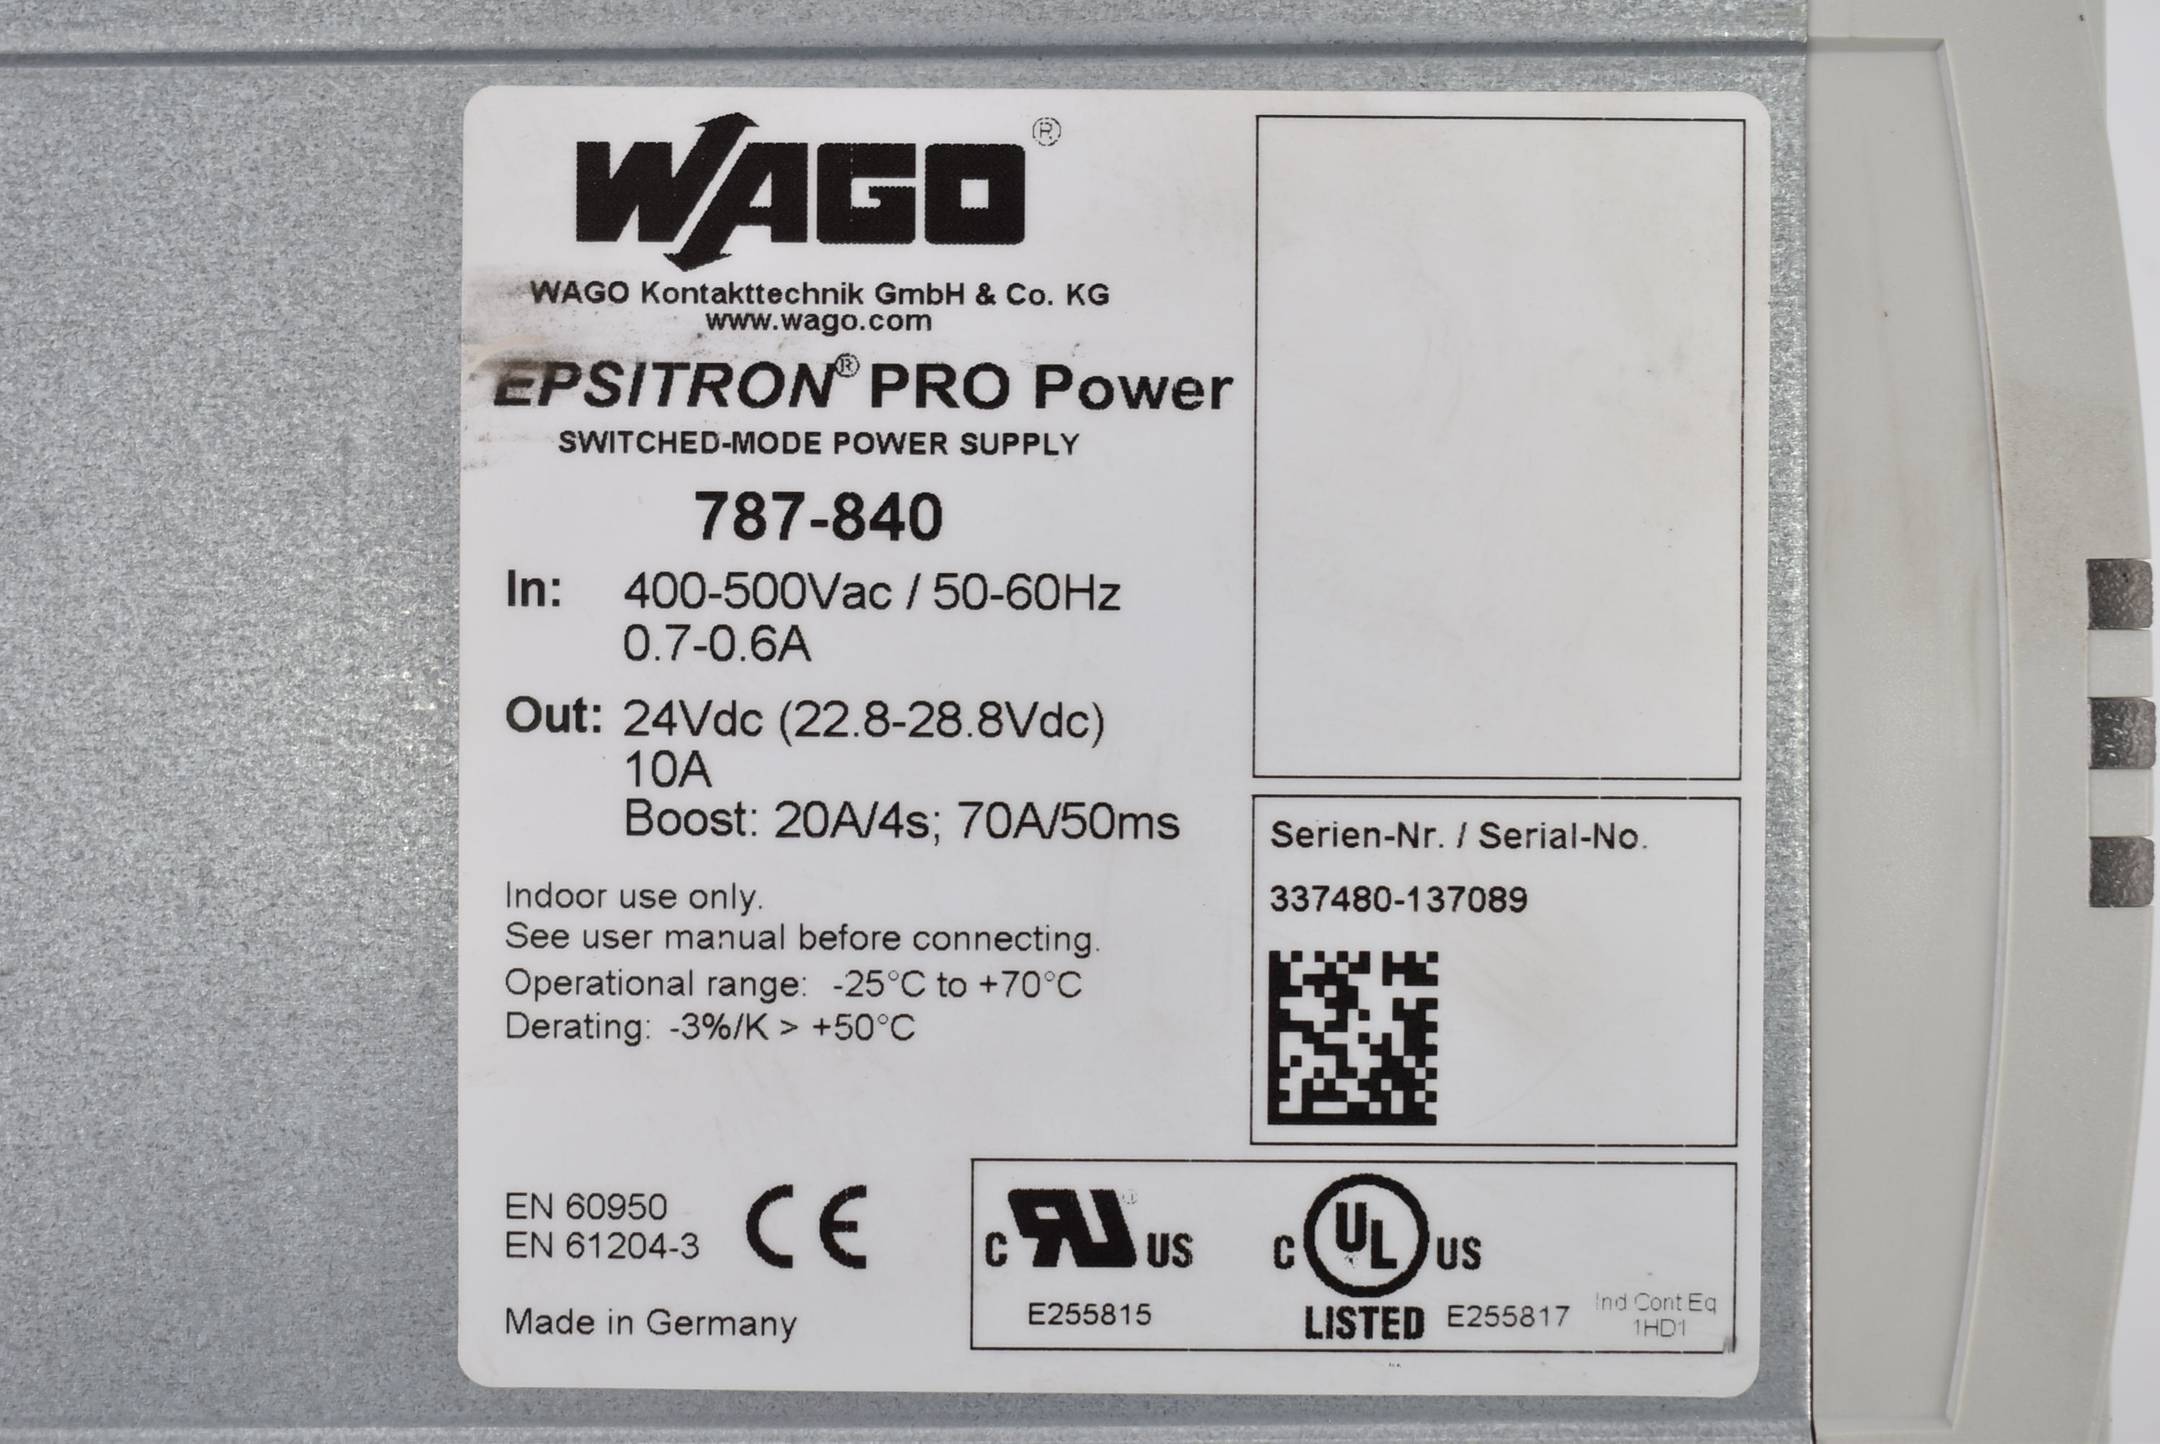 WAGO Epsitron Pro Power getaktete Stromversorgung 787-840